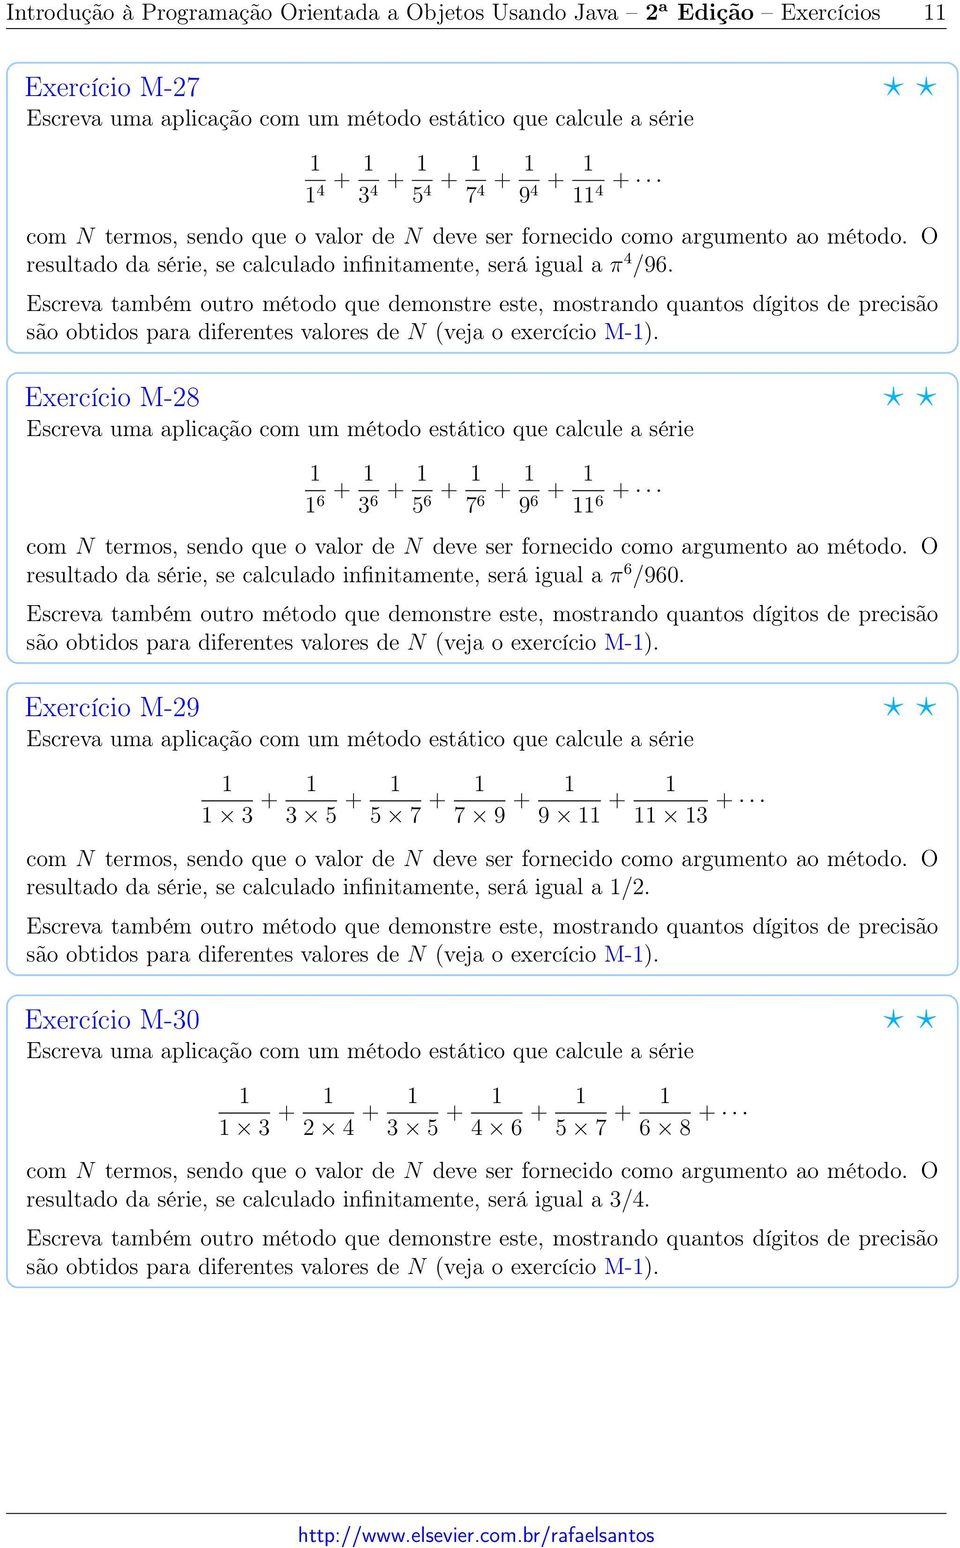 Exercício M-28 6 + 3 6 + 5 6 + 7 6 + 9 6 + 6 + resultado da série, se calculado infinitamente, será igual a π 6 /960.